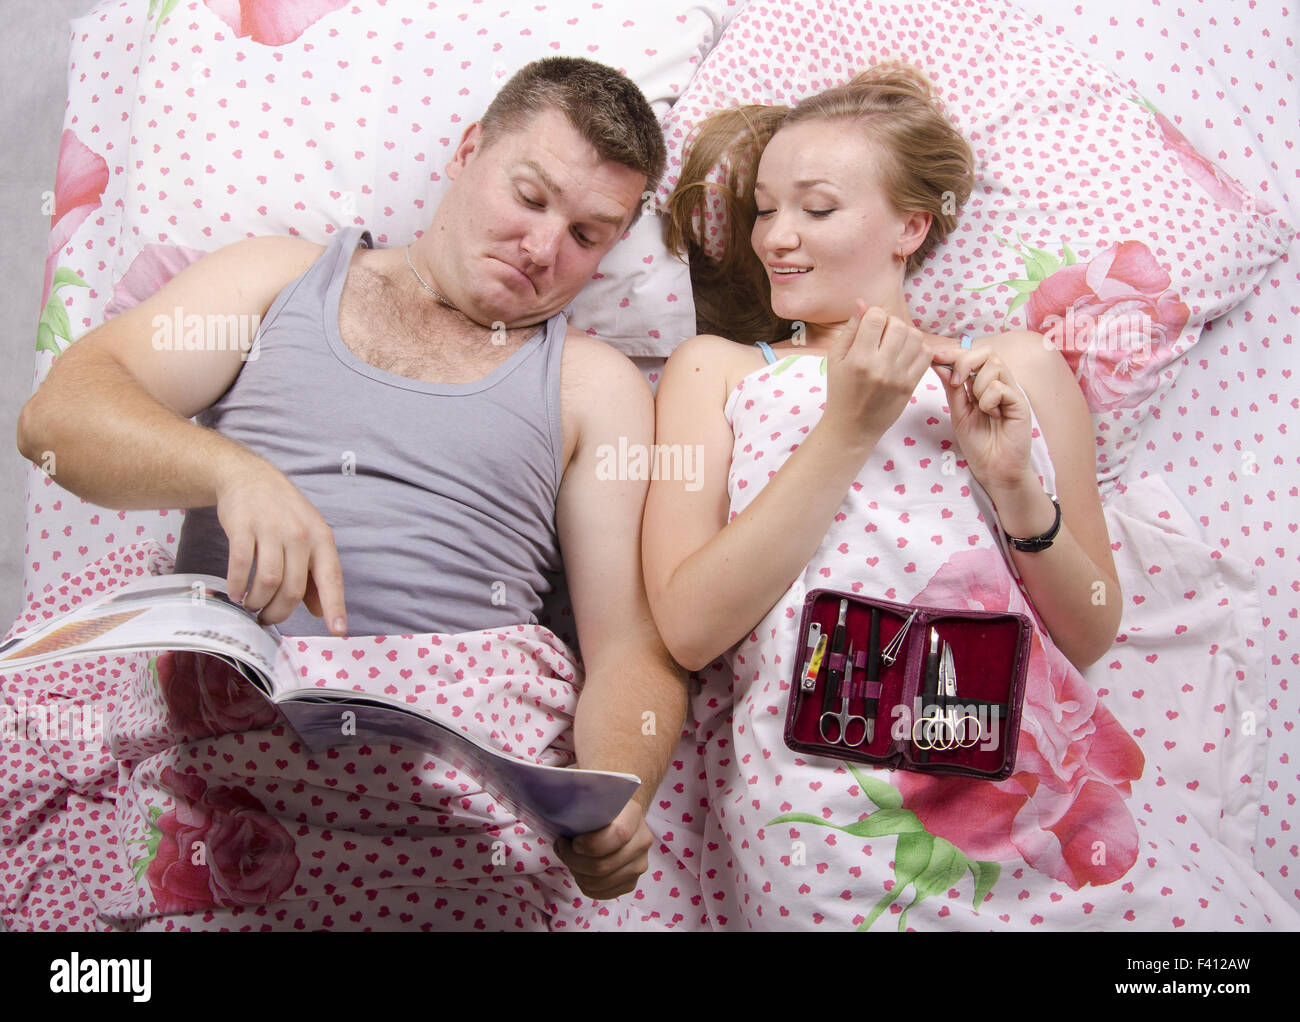 Husband with magazine, wife manicure set Stock Photo